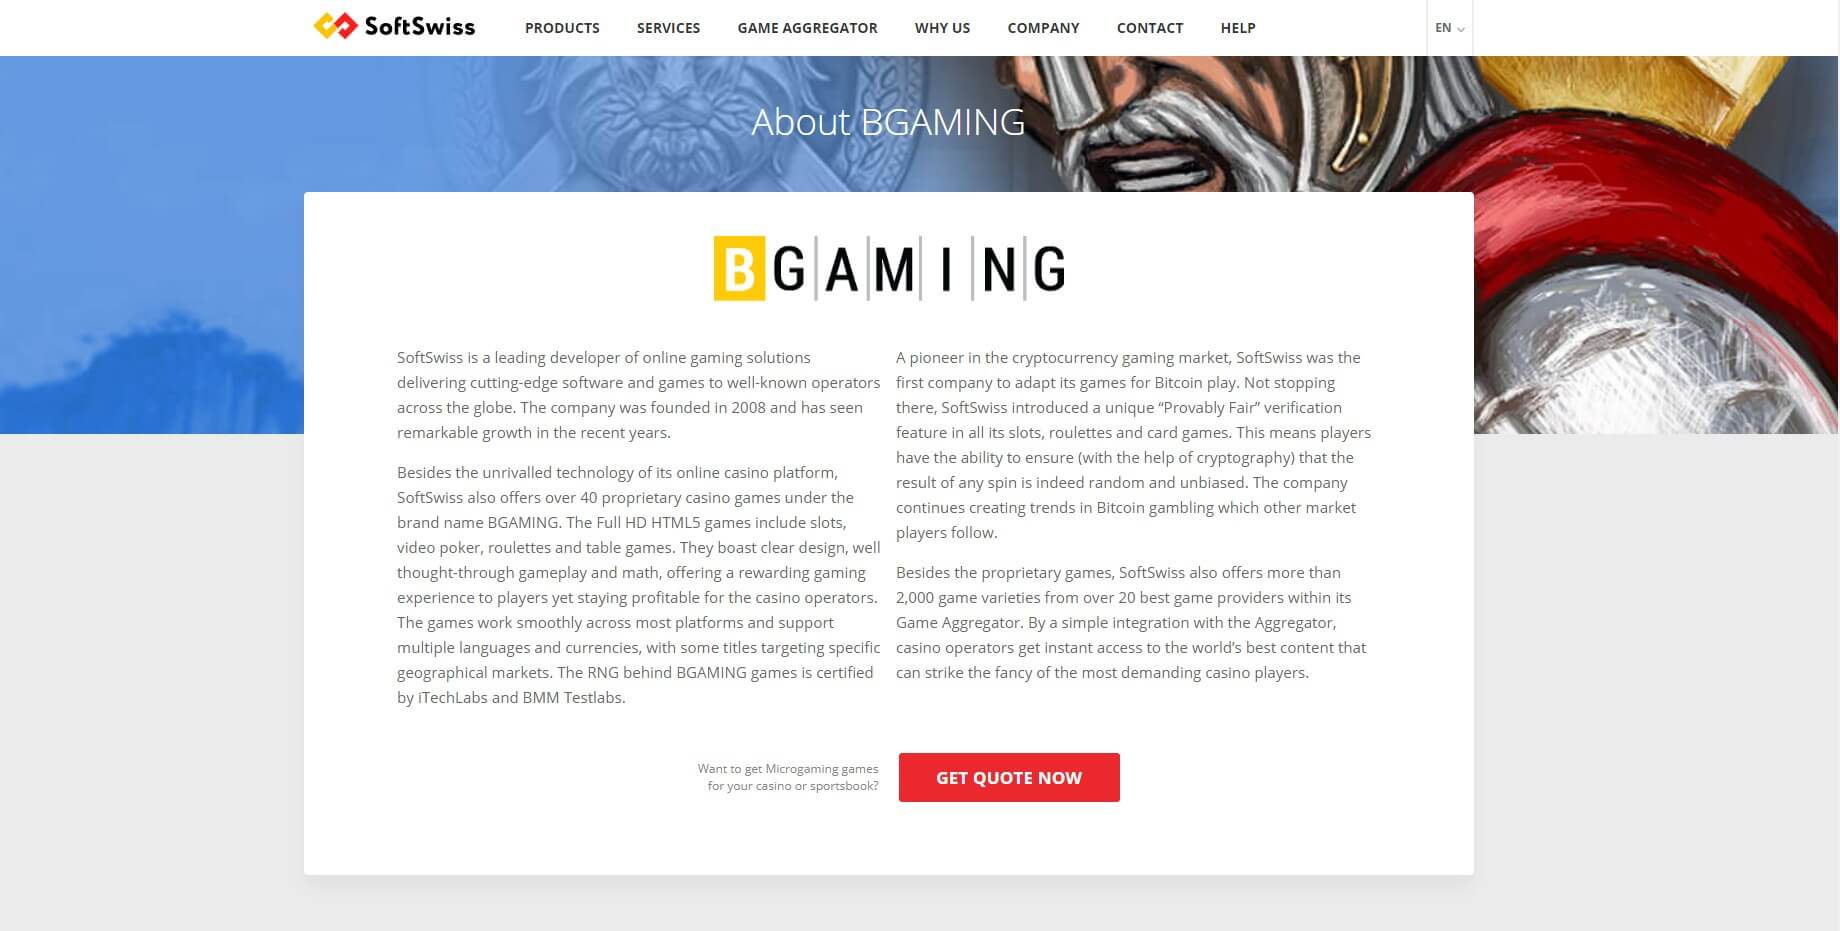 SOFTSWISS Game Aggregator enhances portfolio through BetGames – IAG